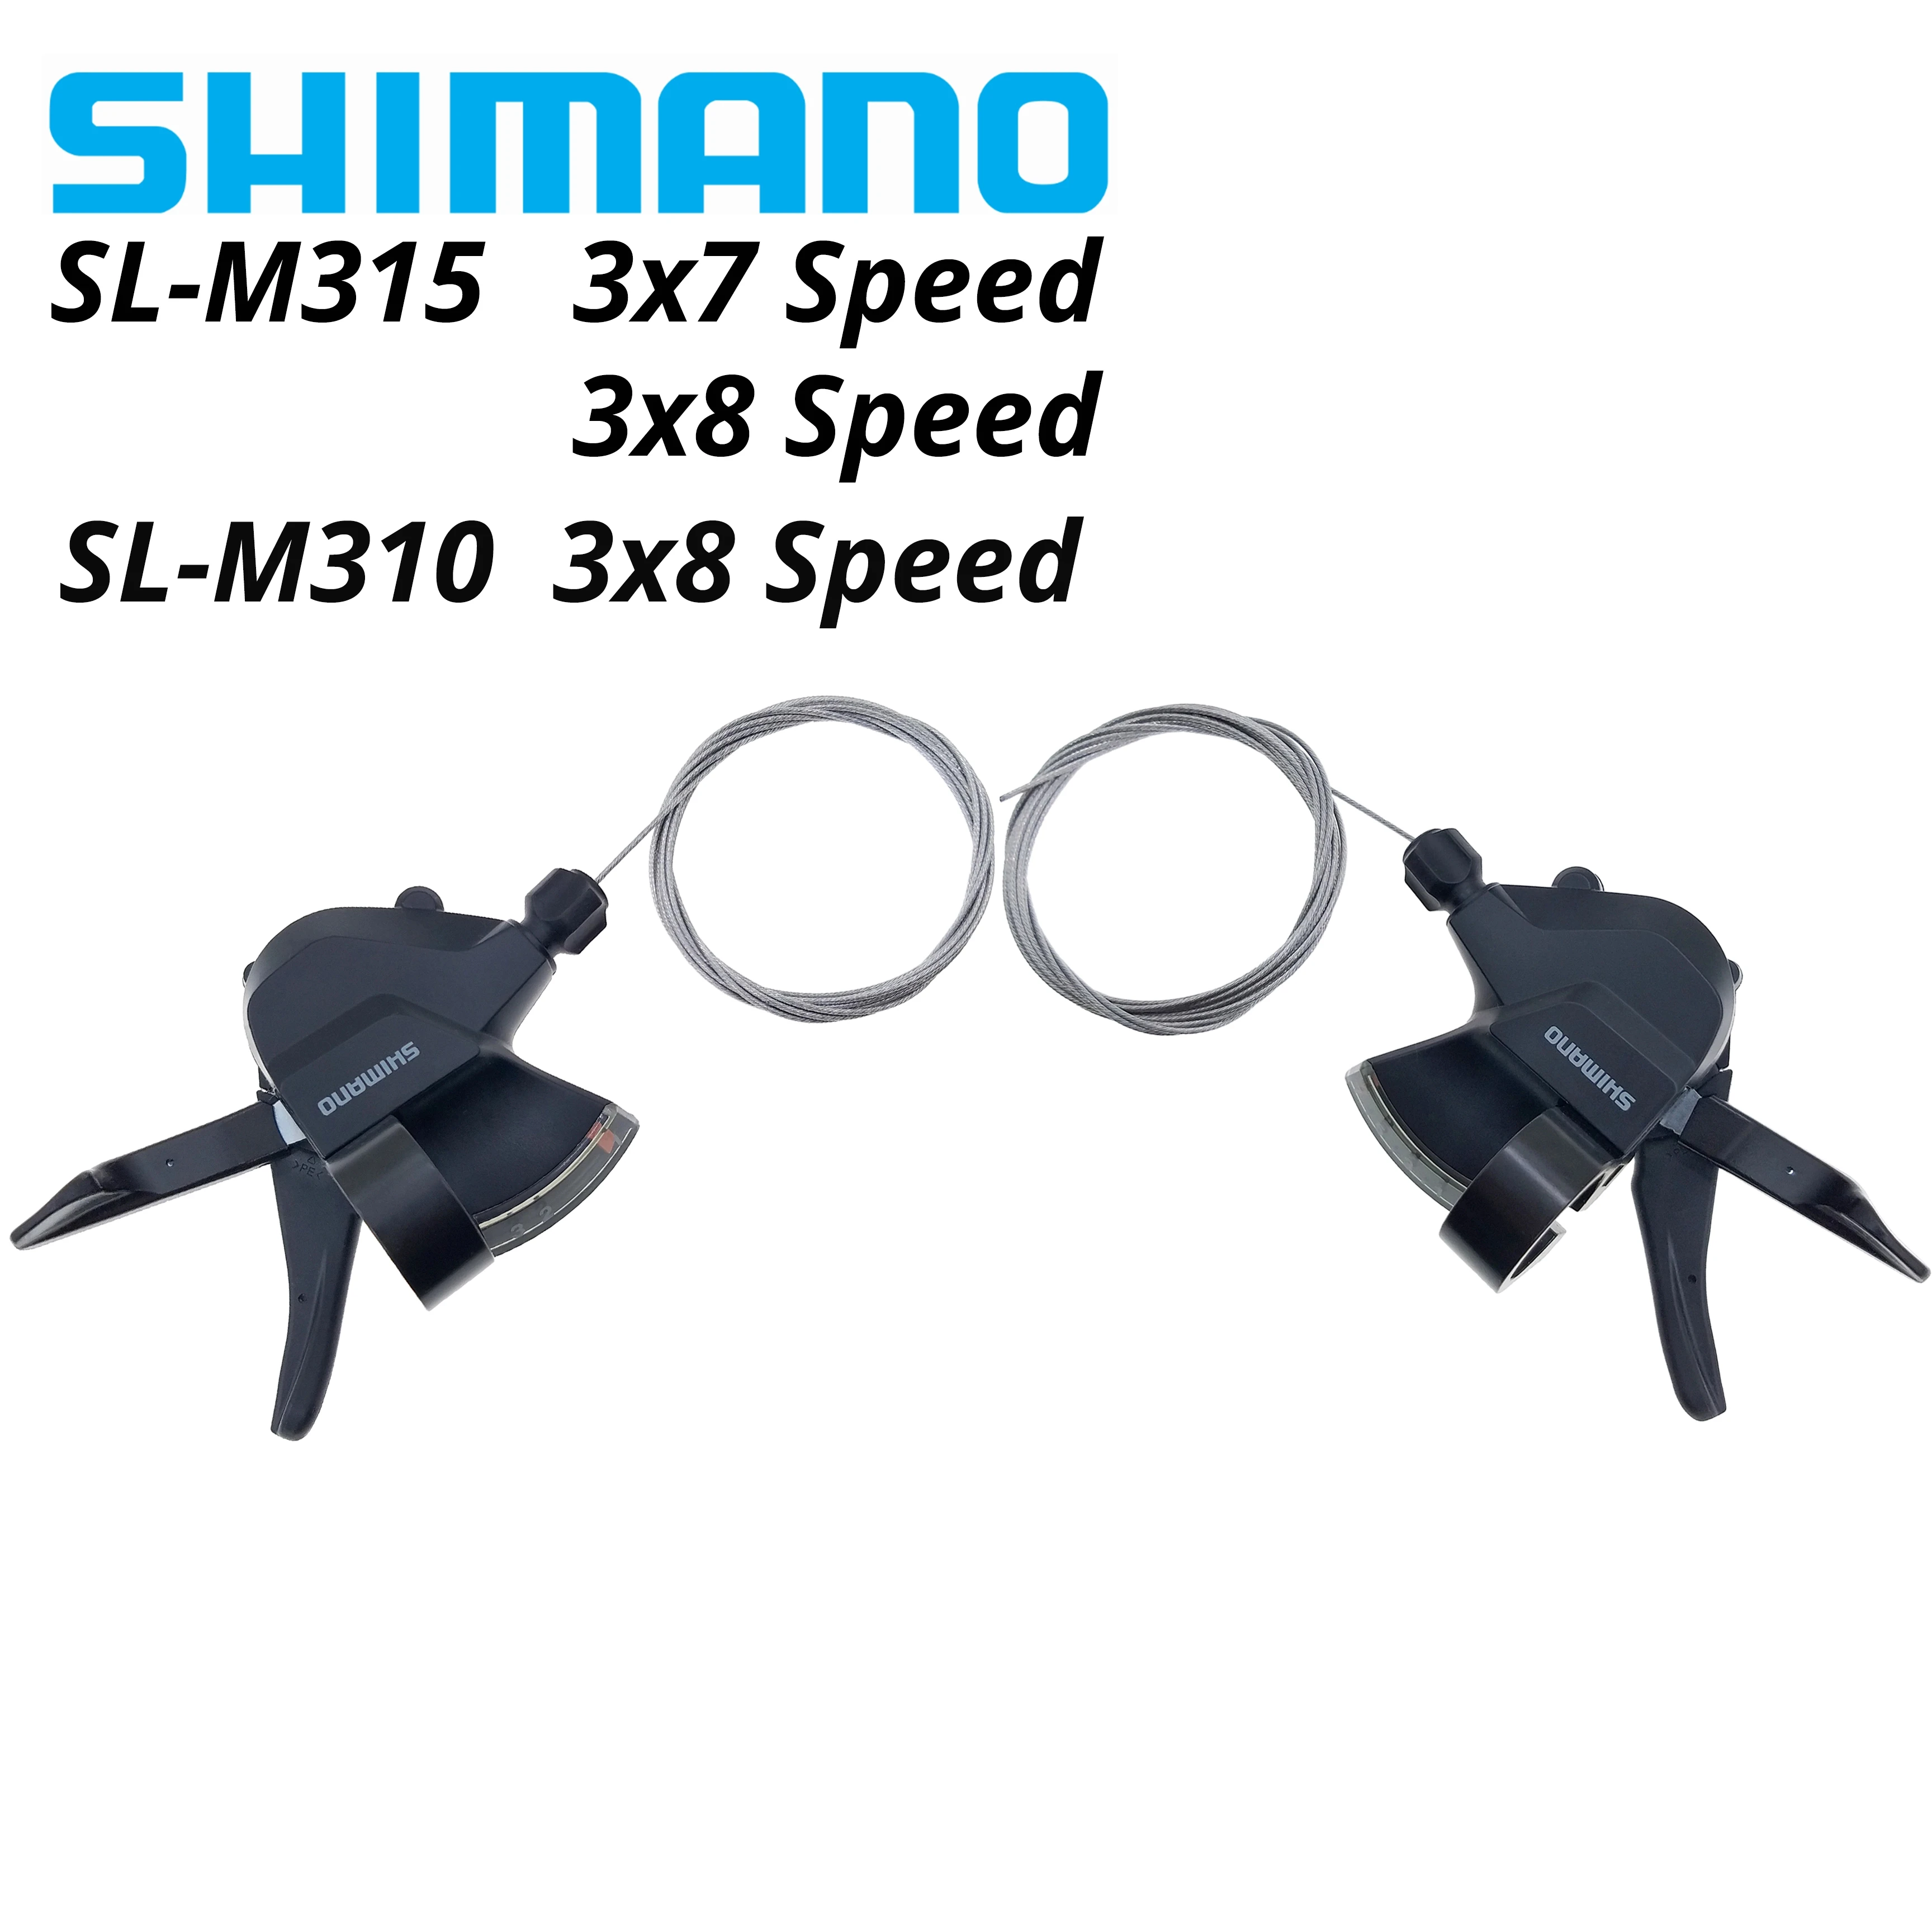 SHIMANO Indicateur de rapport engagé complet pour sl-m310 3-porte à gauche